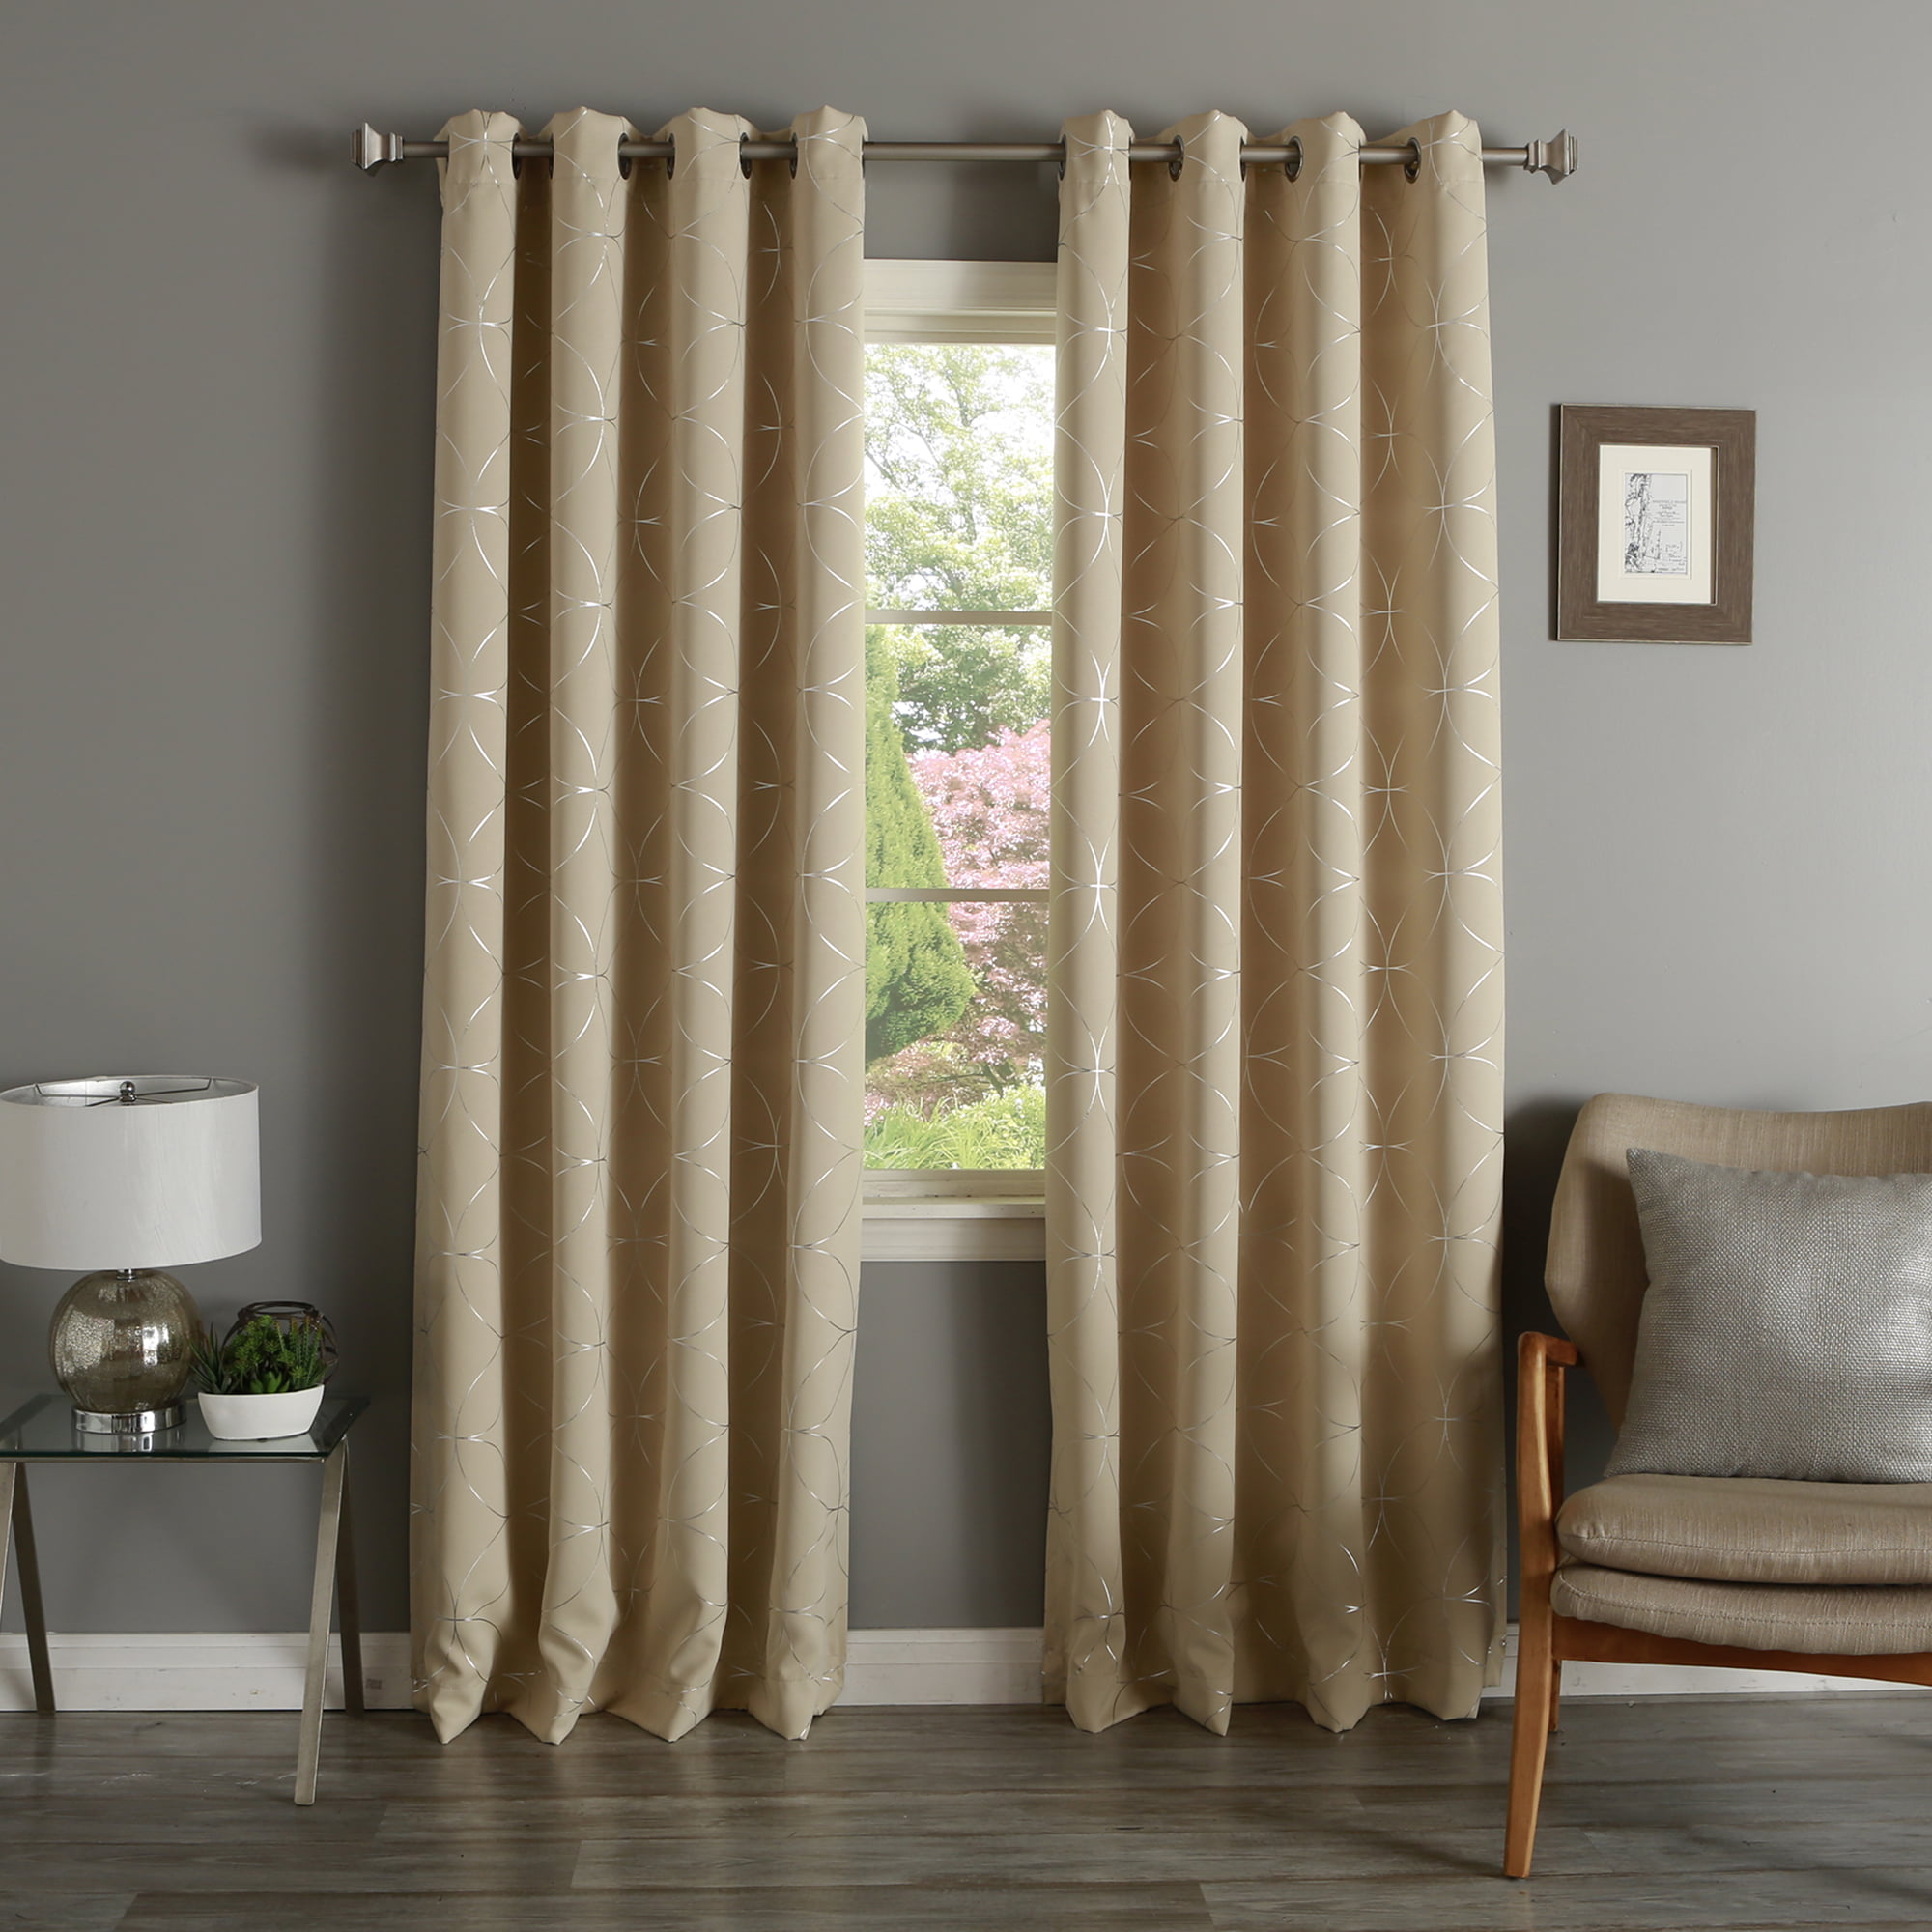 Quality Home Circle Foil Blackout Curtains - Beige - 52"W x 108"L (Set